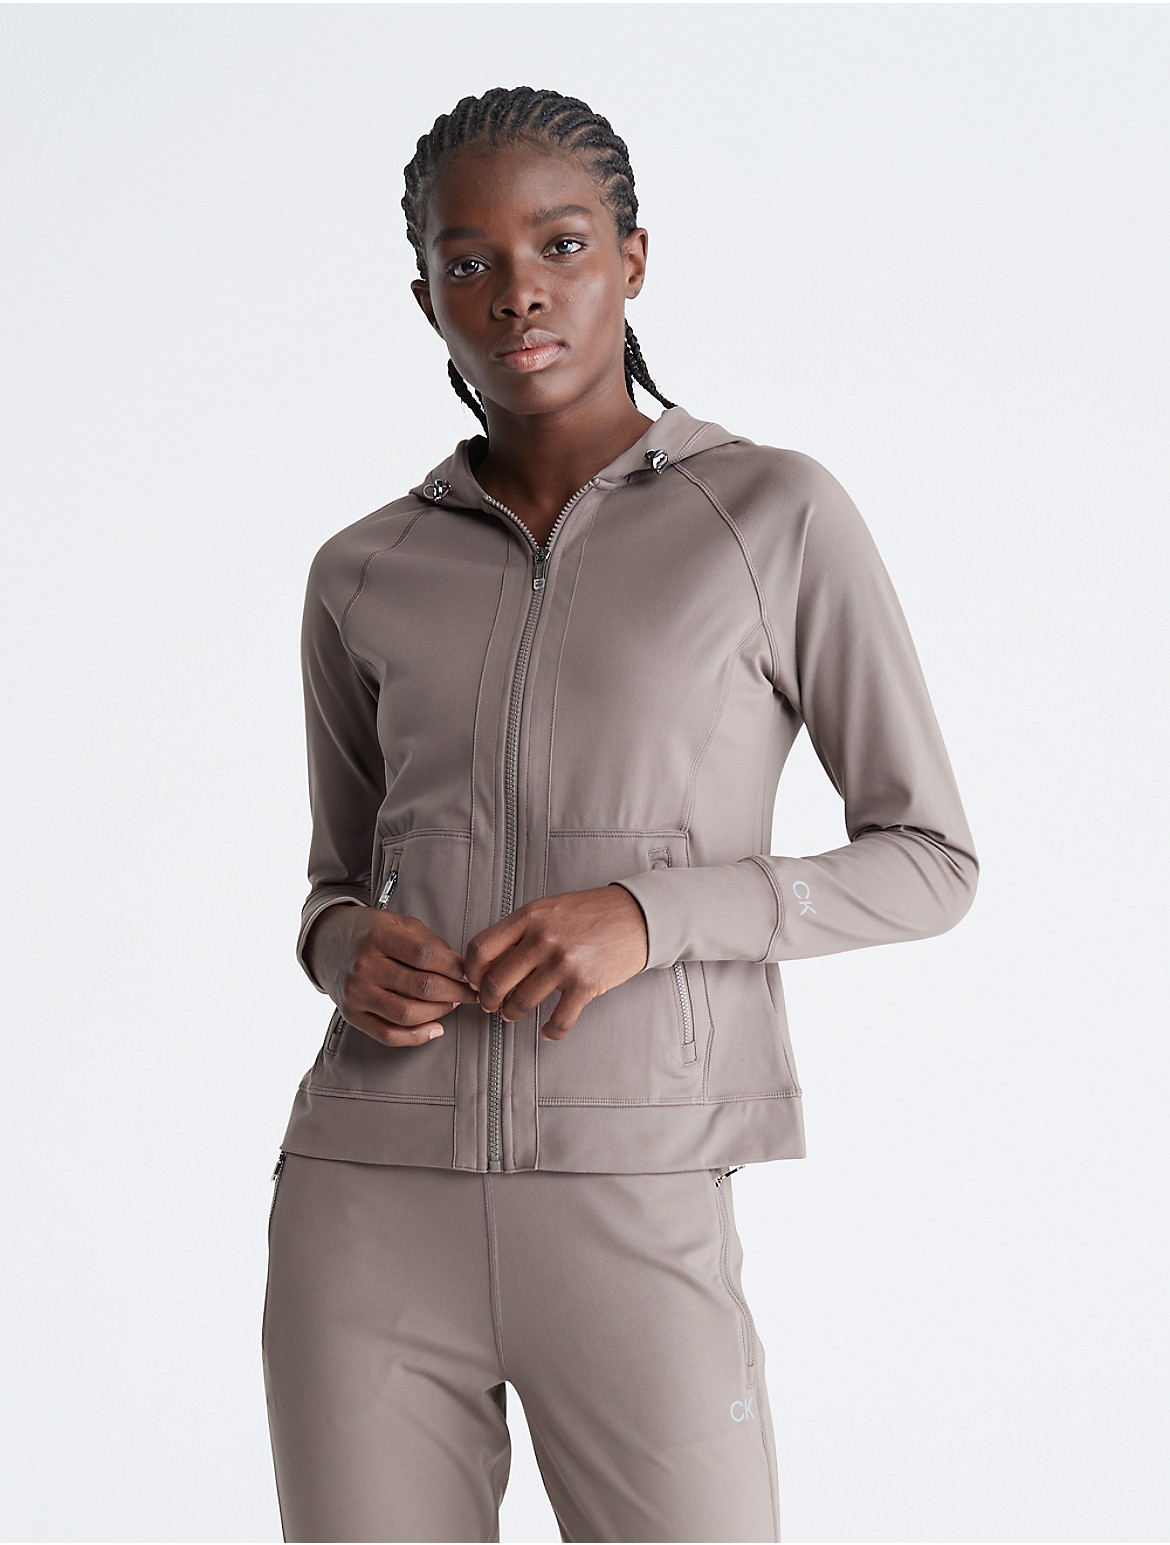 Calvin Klein Women's Performance Embrace Raglan Sleeve Jacket - Neutral - XS